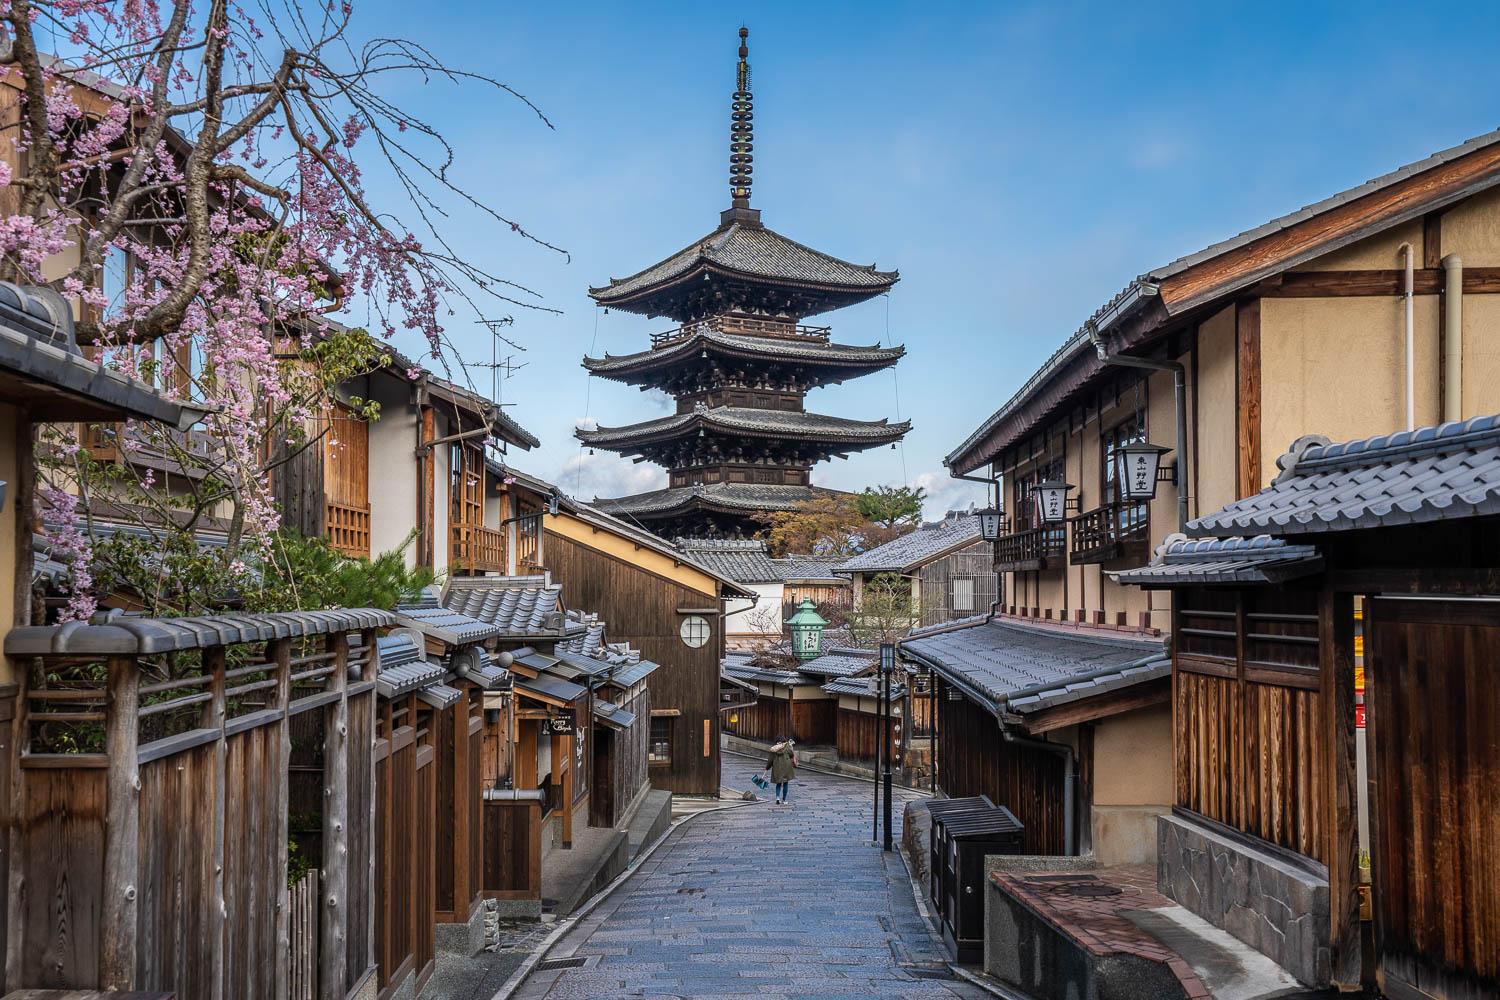 Tham quan cố đô Kyoto - nơi in dấu Nhật Bản cổ xưa | WeXpats Guide